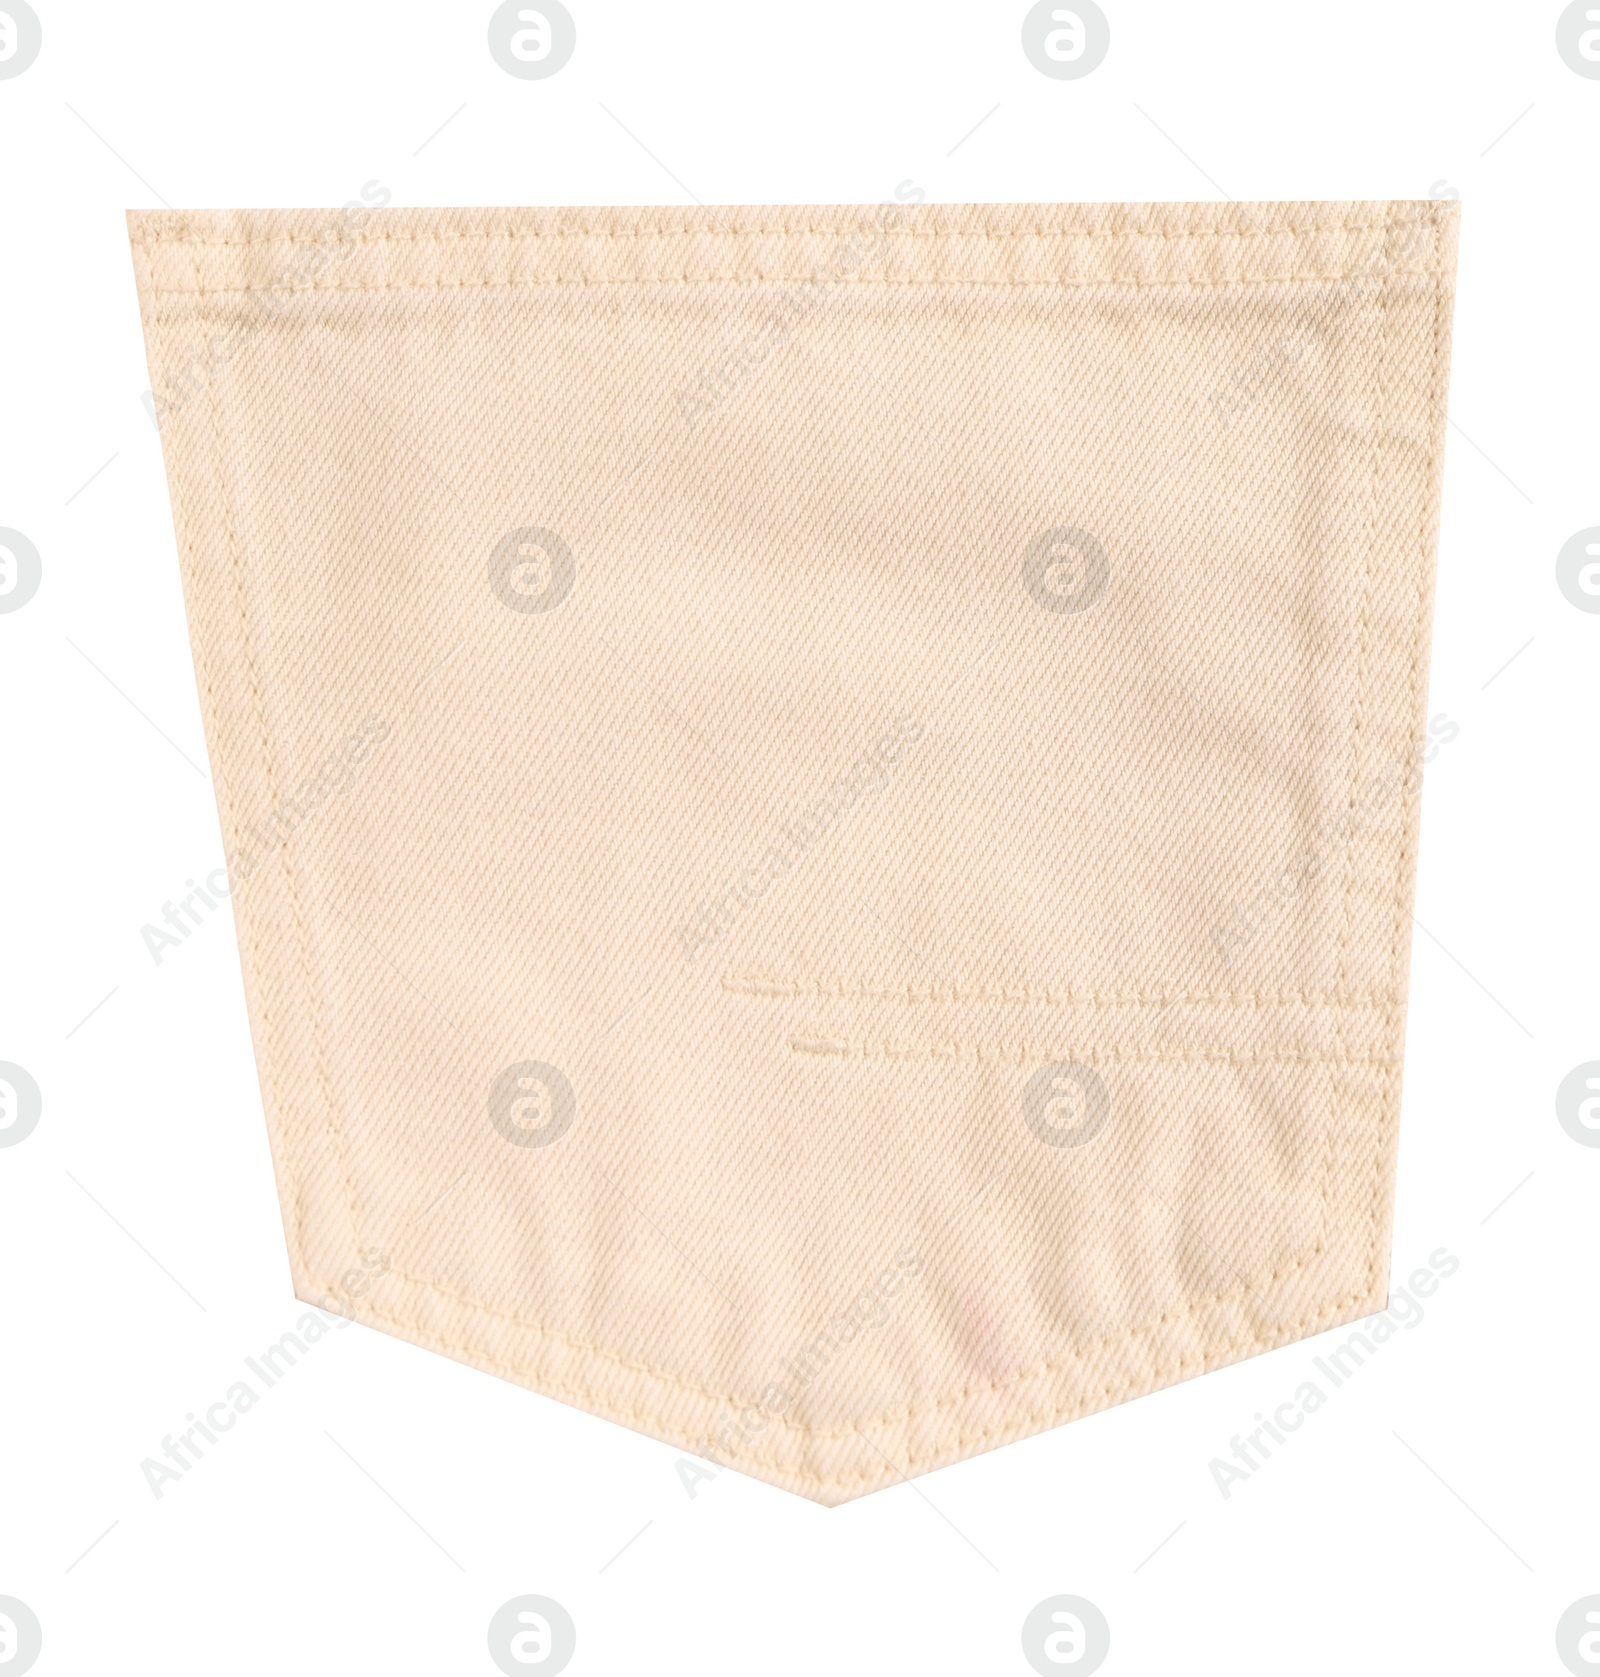 Image of Stylish beige denim pocket isolated on white